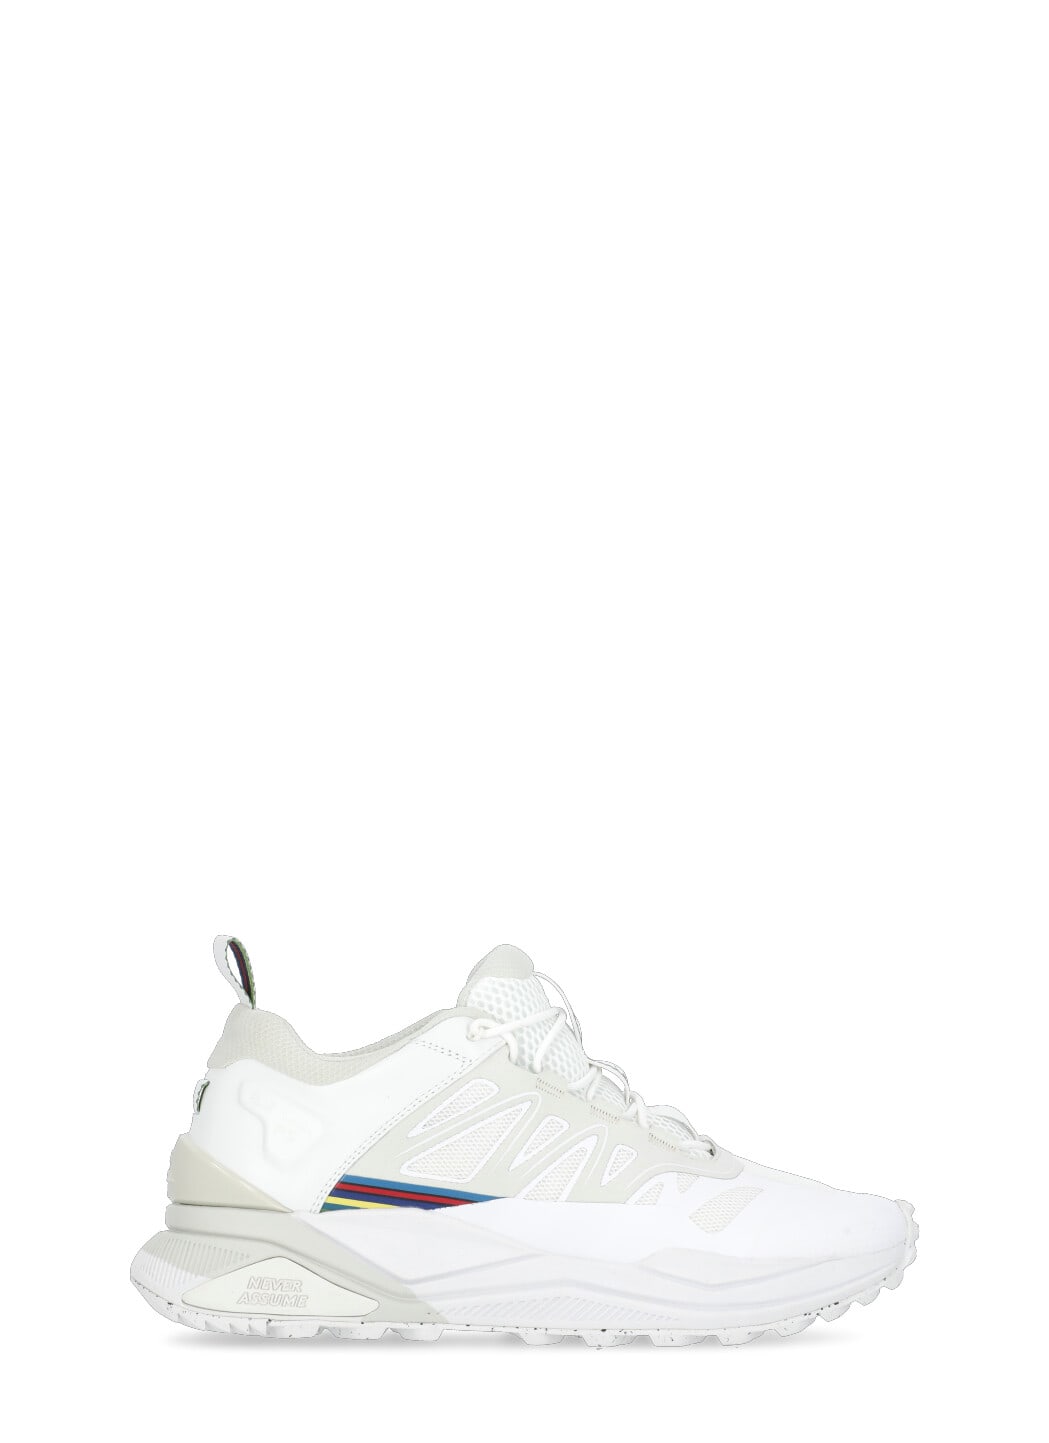 Paul Smith Klea Sneakers In White